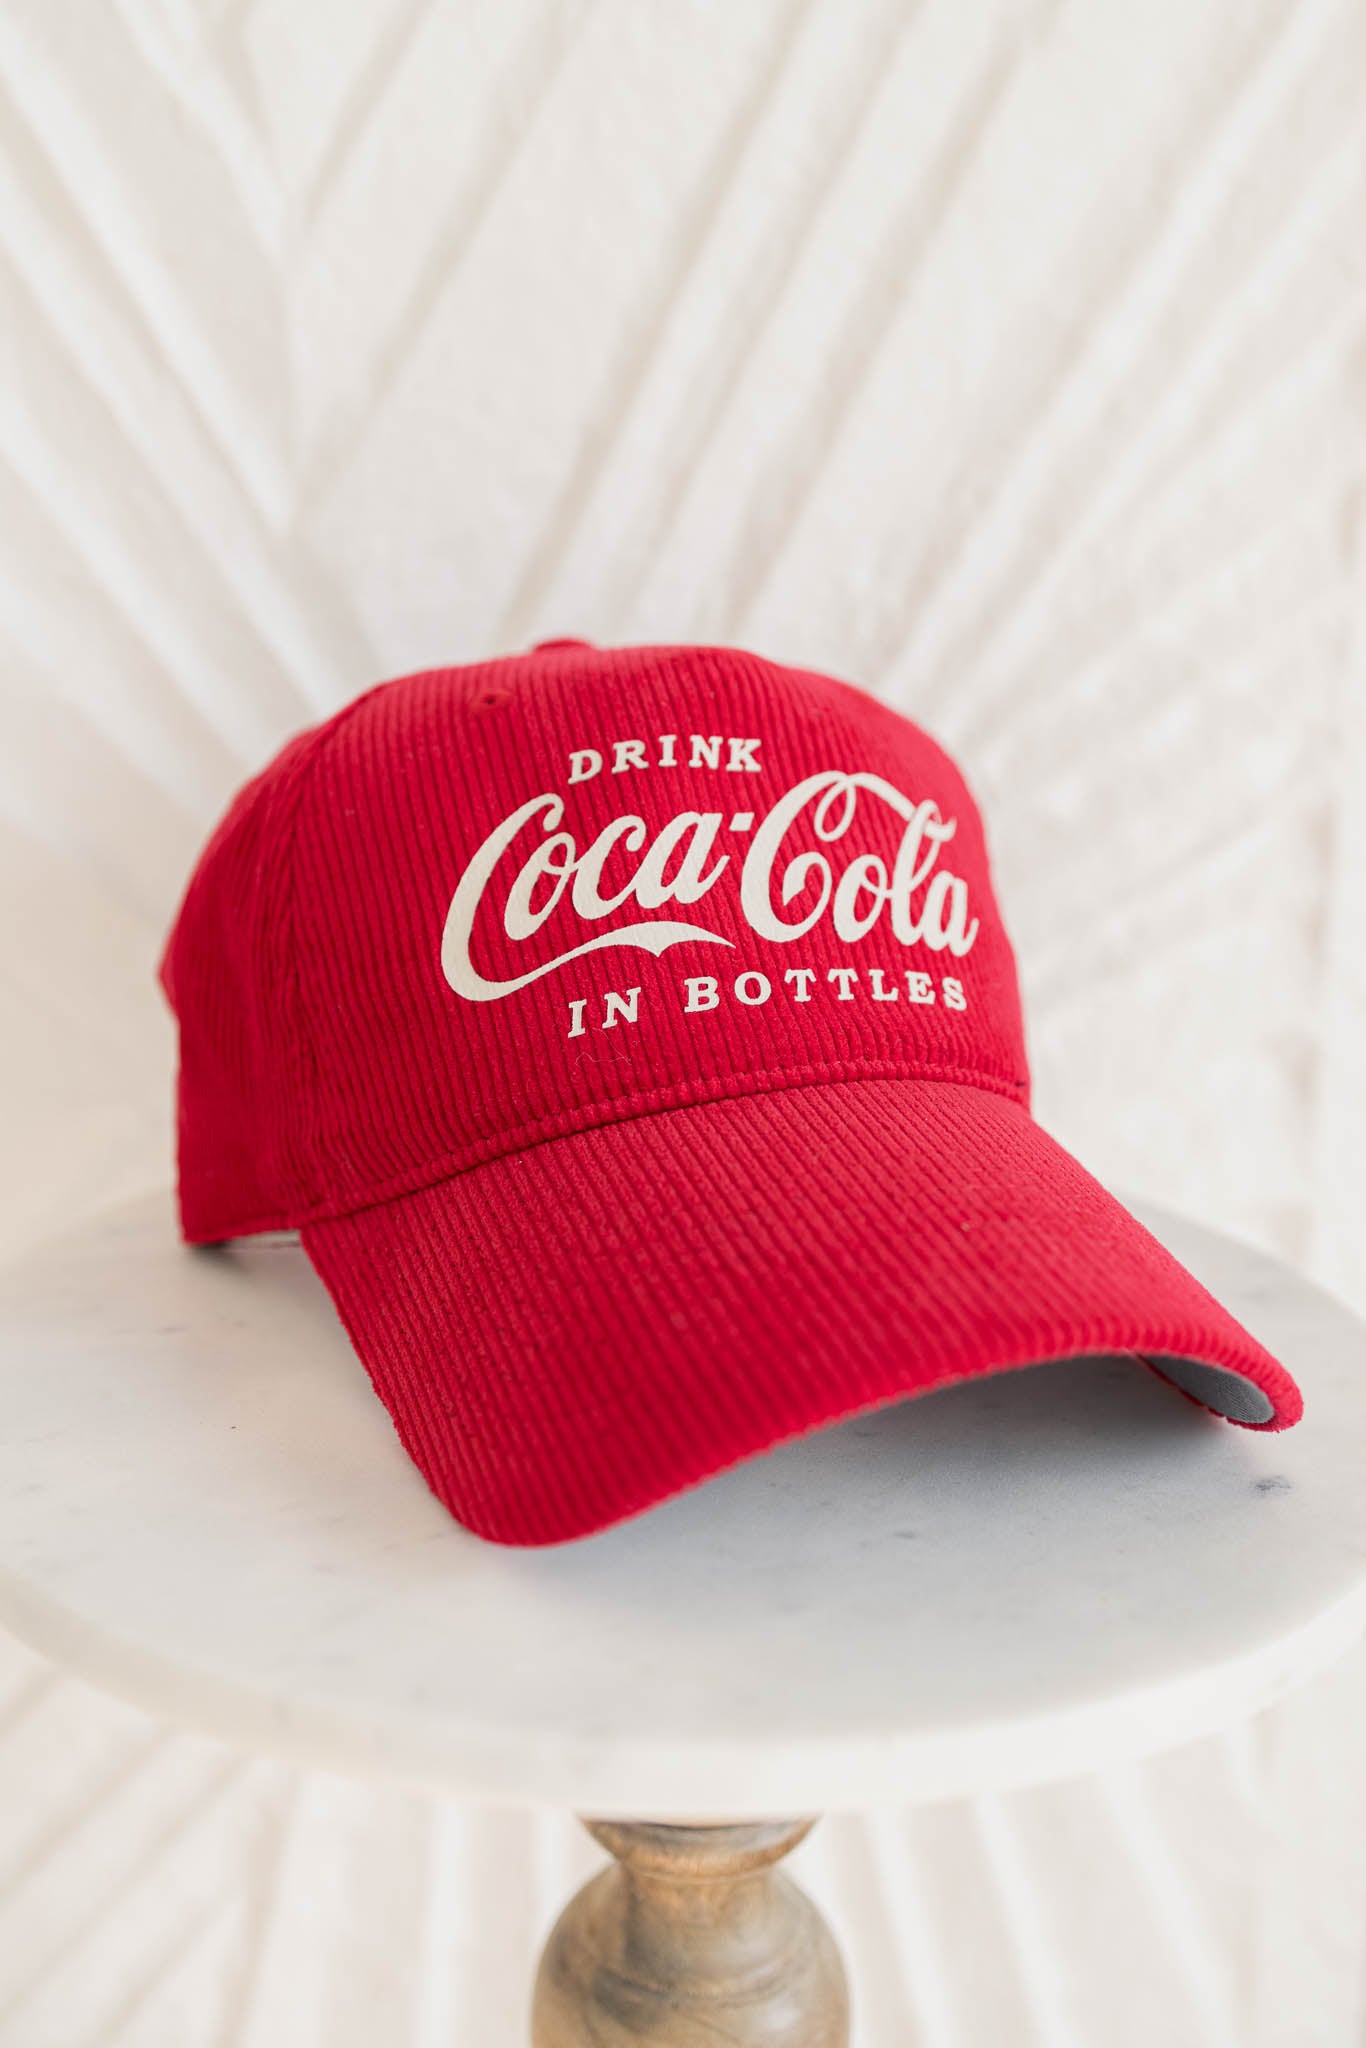 Coca-Cola Trucker Hat